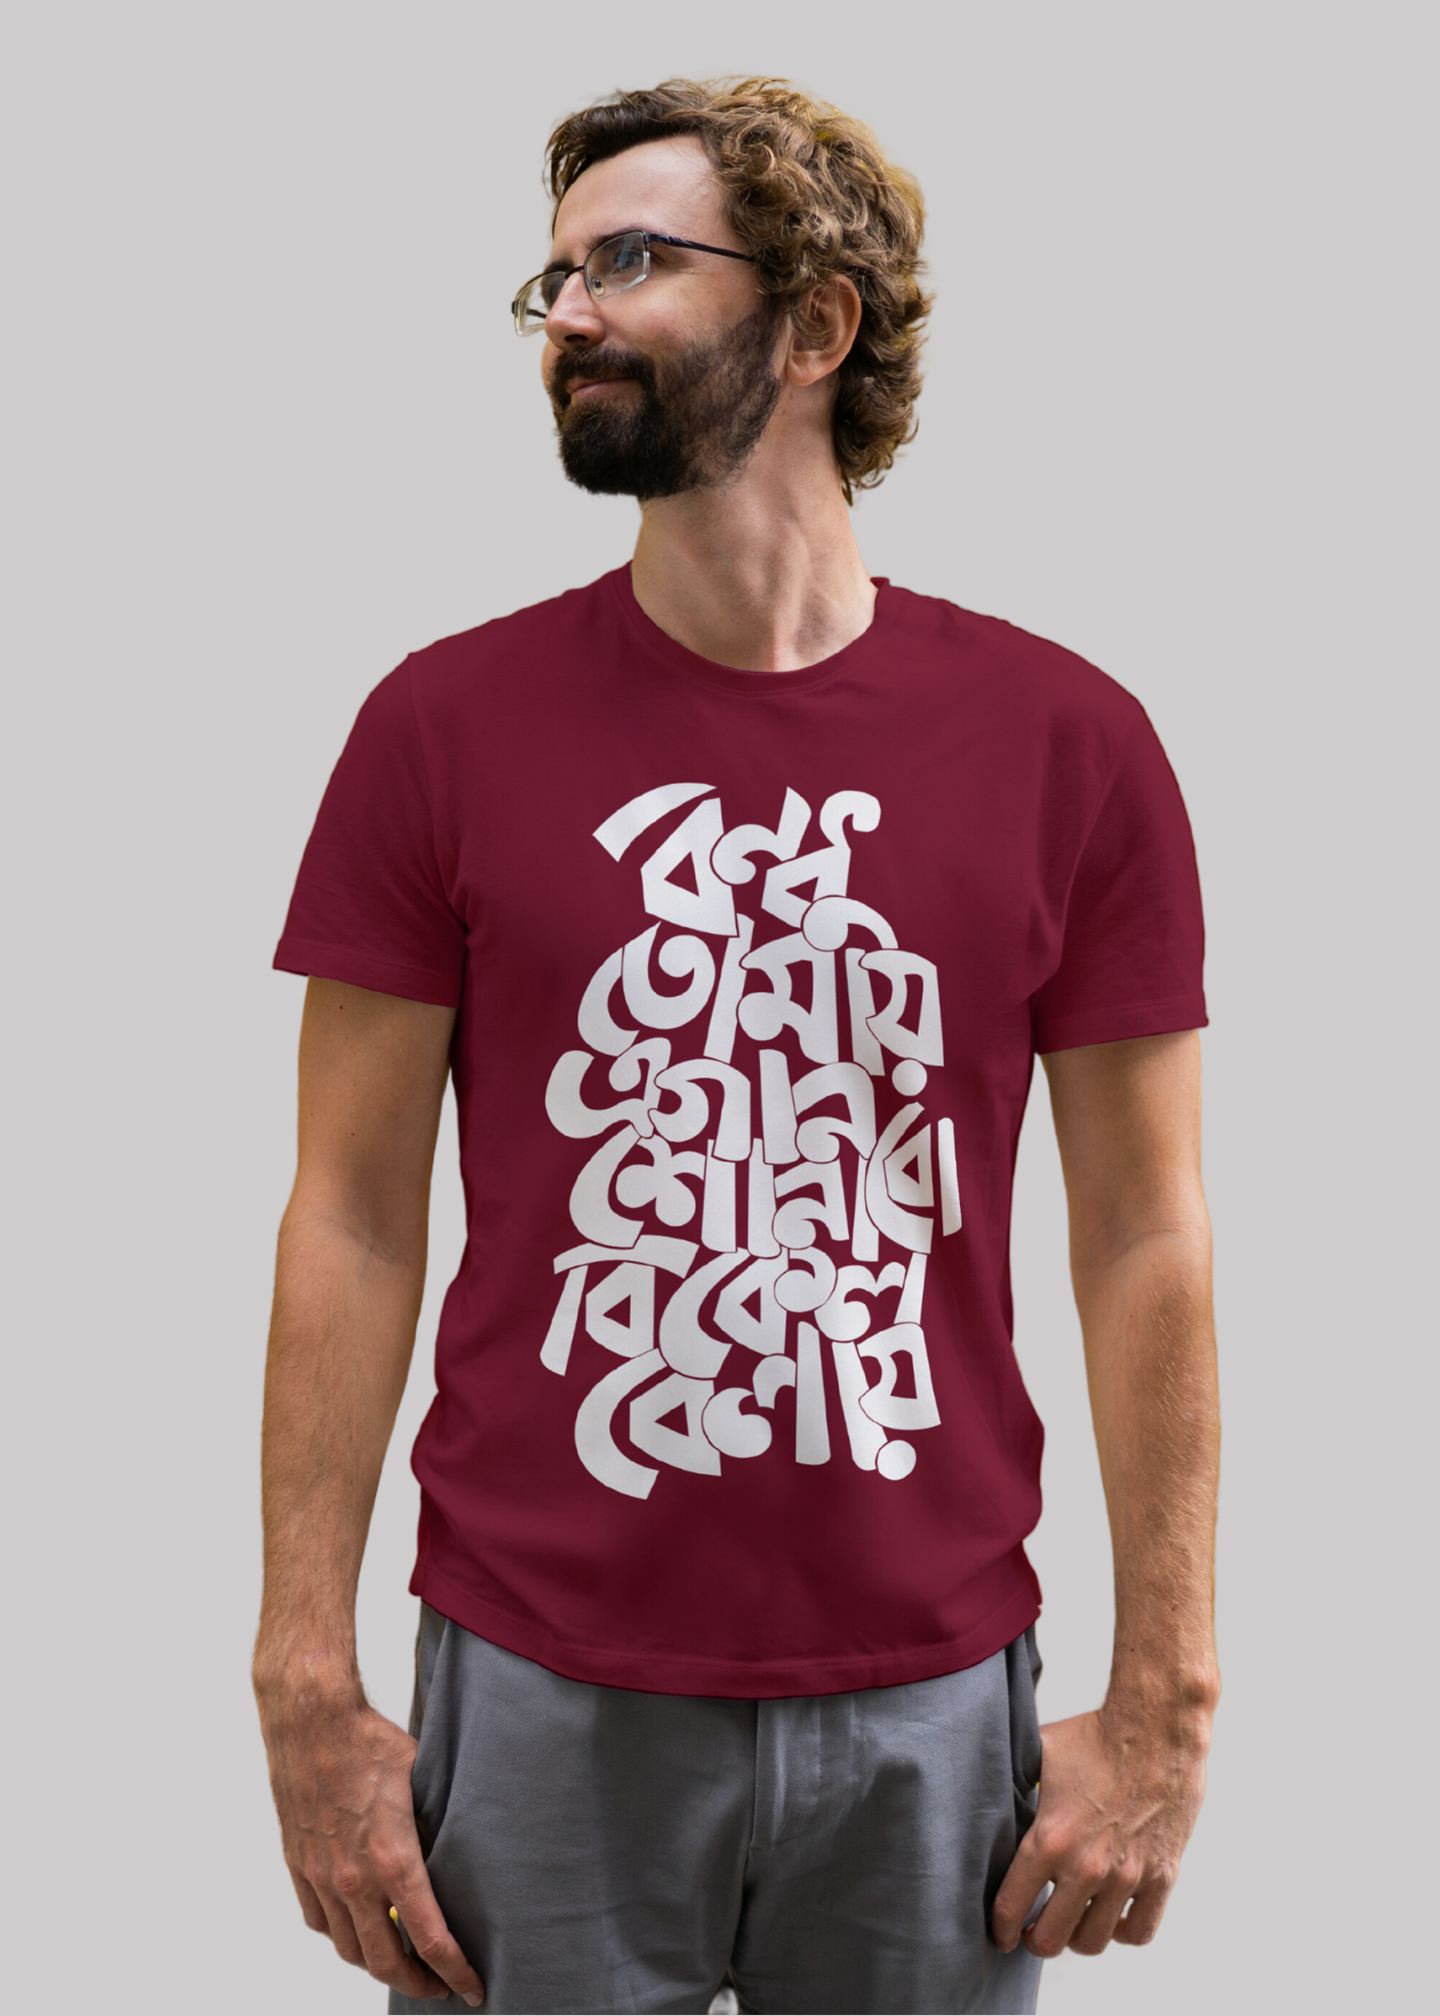 Bondhu tomay a gaan shonabo bikel belay Bengali Printed Half Sleeve Premium Cotton T-shirt For Men